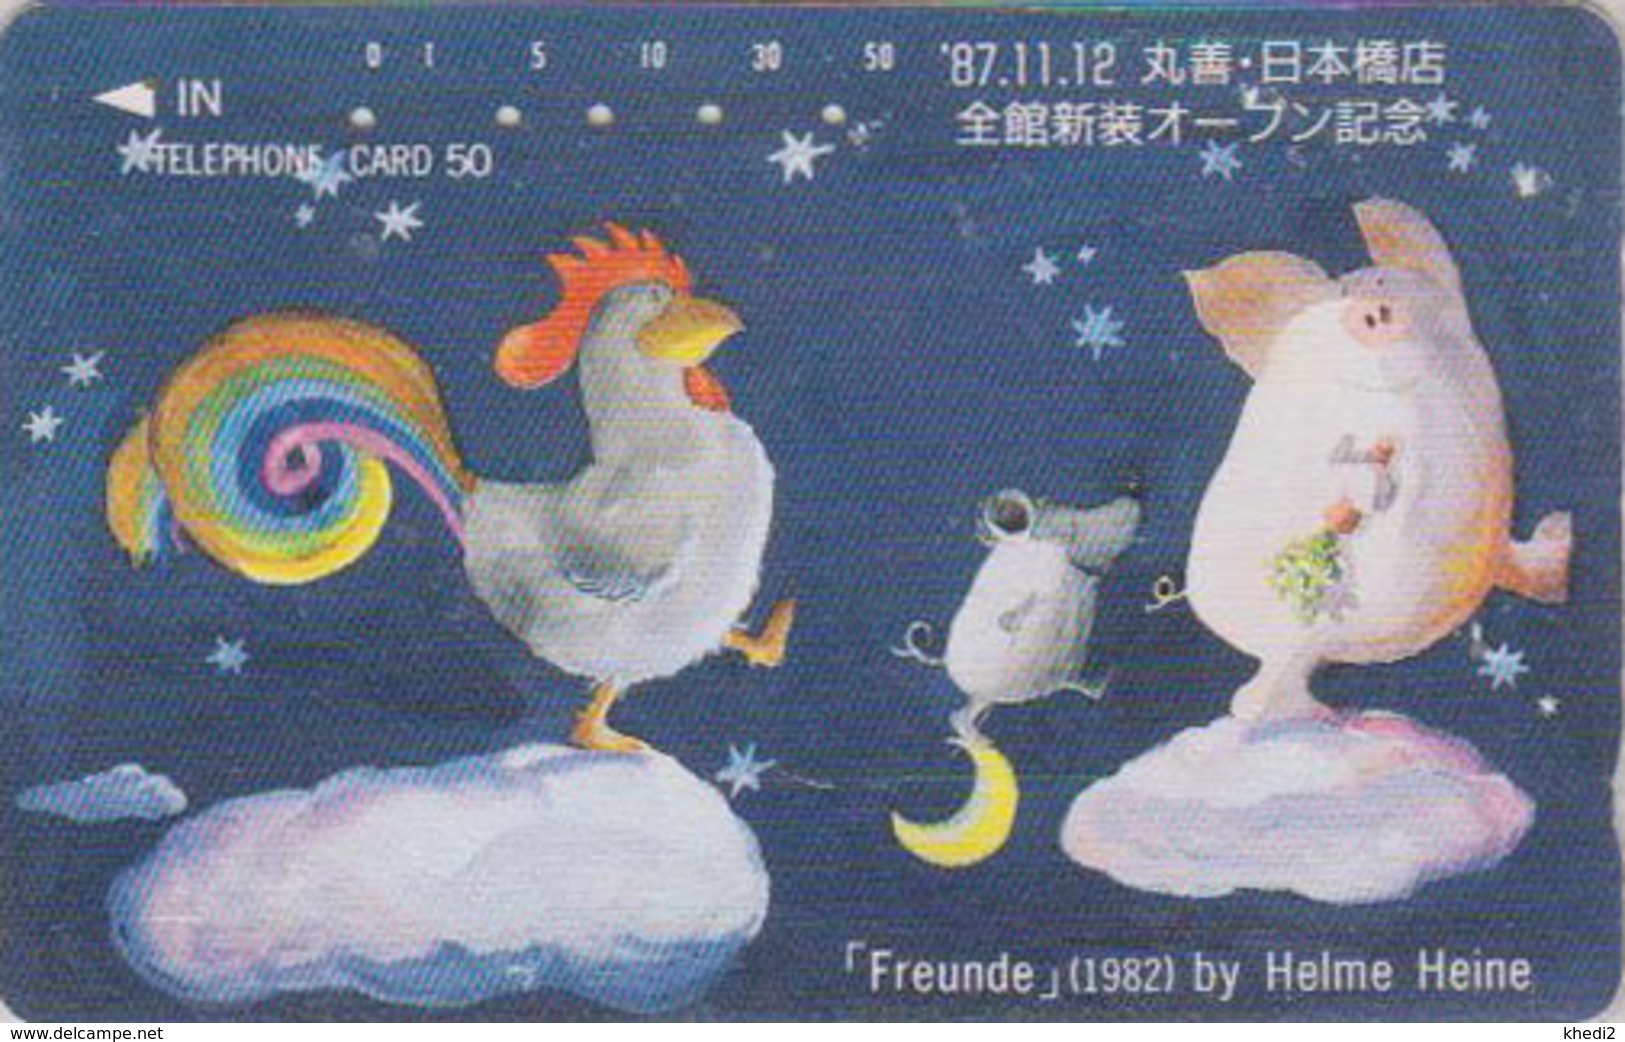 Télécarte Japon / 110-36302 - Comics By HELMUT HEINE - COQ COCHON RAT - Rooster Pig Japan Phonecard 2 GERMANY - Comics